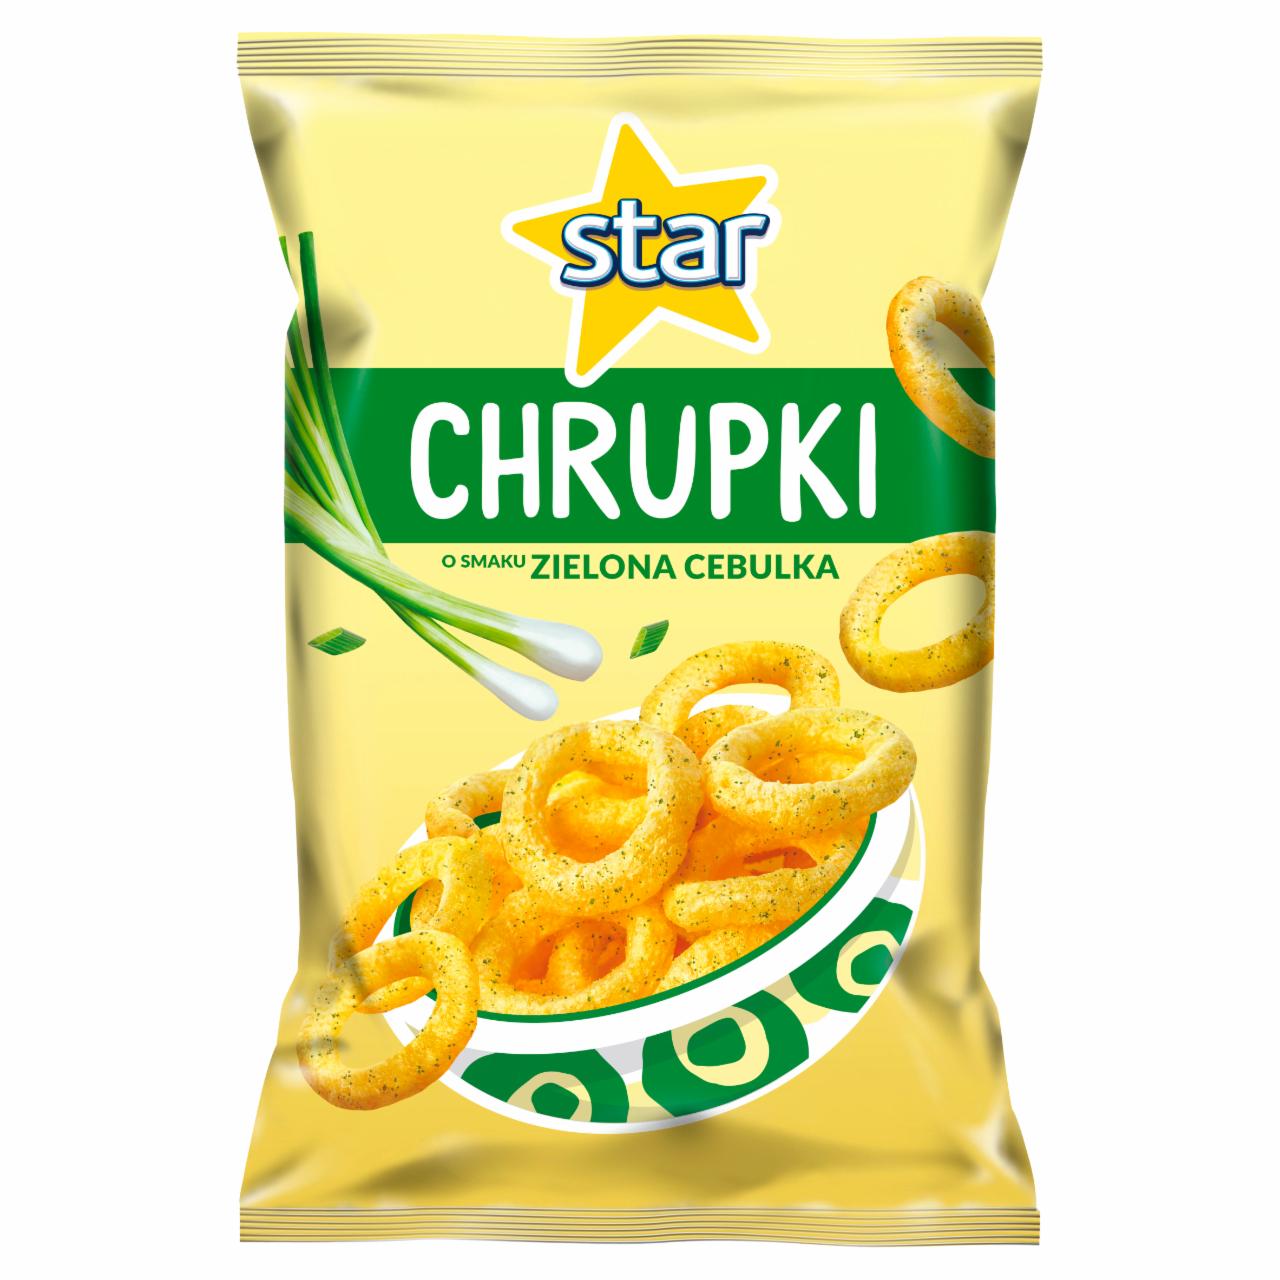 Zdjęcia - Star Chrupki o smaku zielona cebulka 120 g